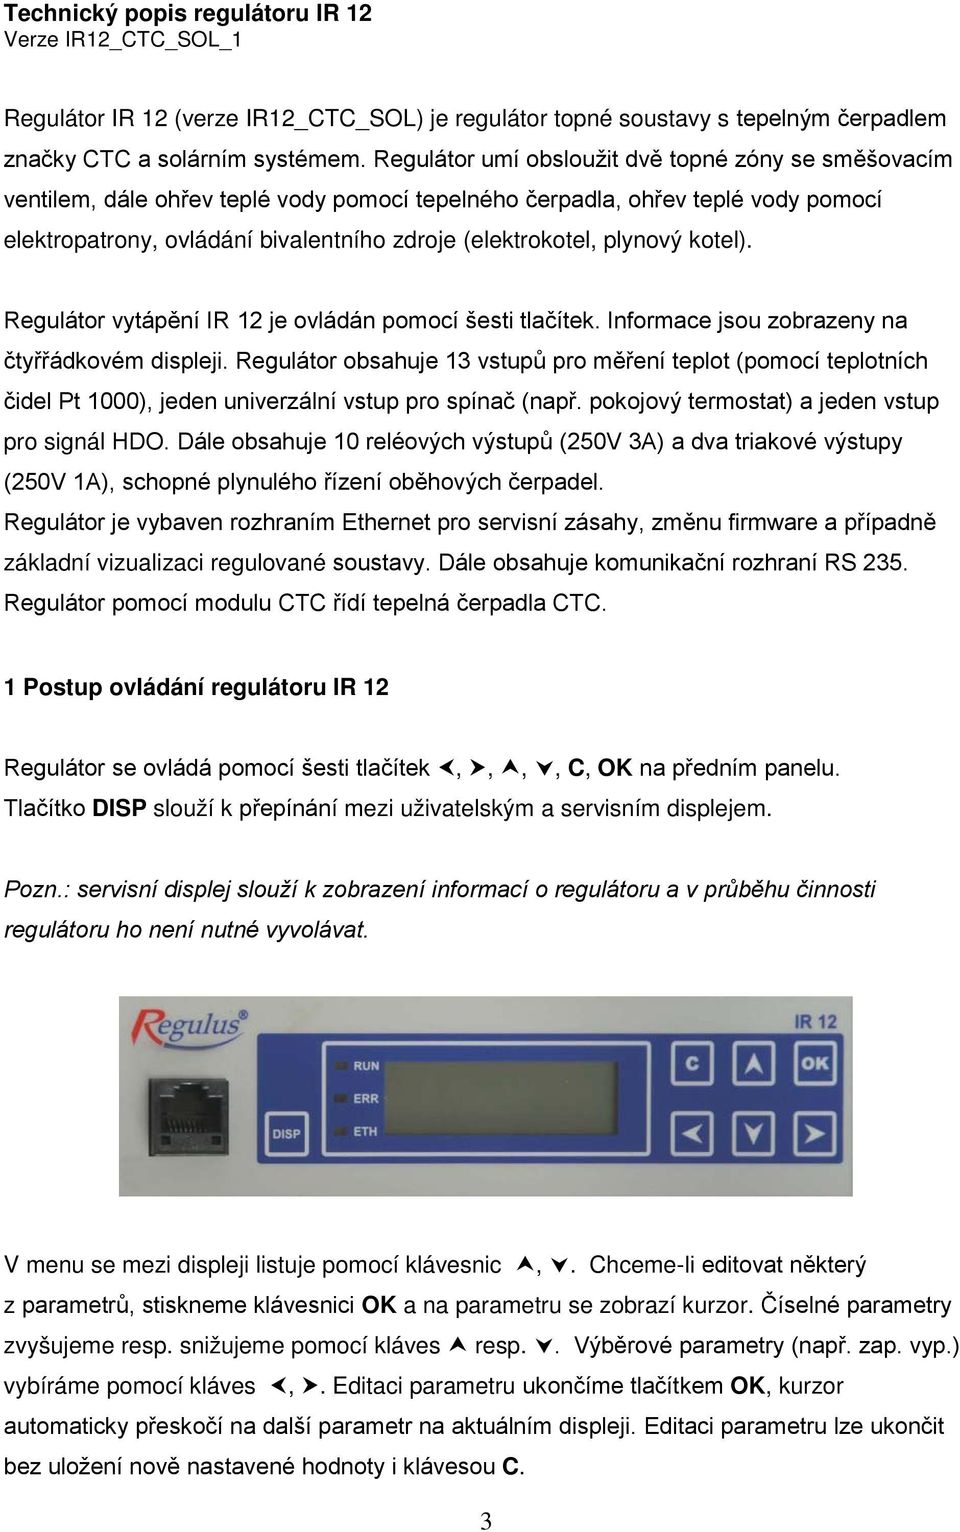 plynový kotel). Regulátor vytápění IR 12 je ovládán pomocí šesti tlačítek. Informace jsou zobrazeny na čtyřřádkovém displeji.